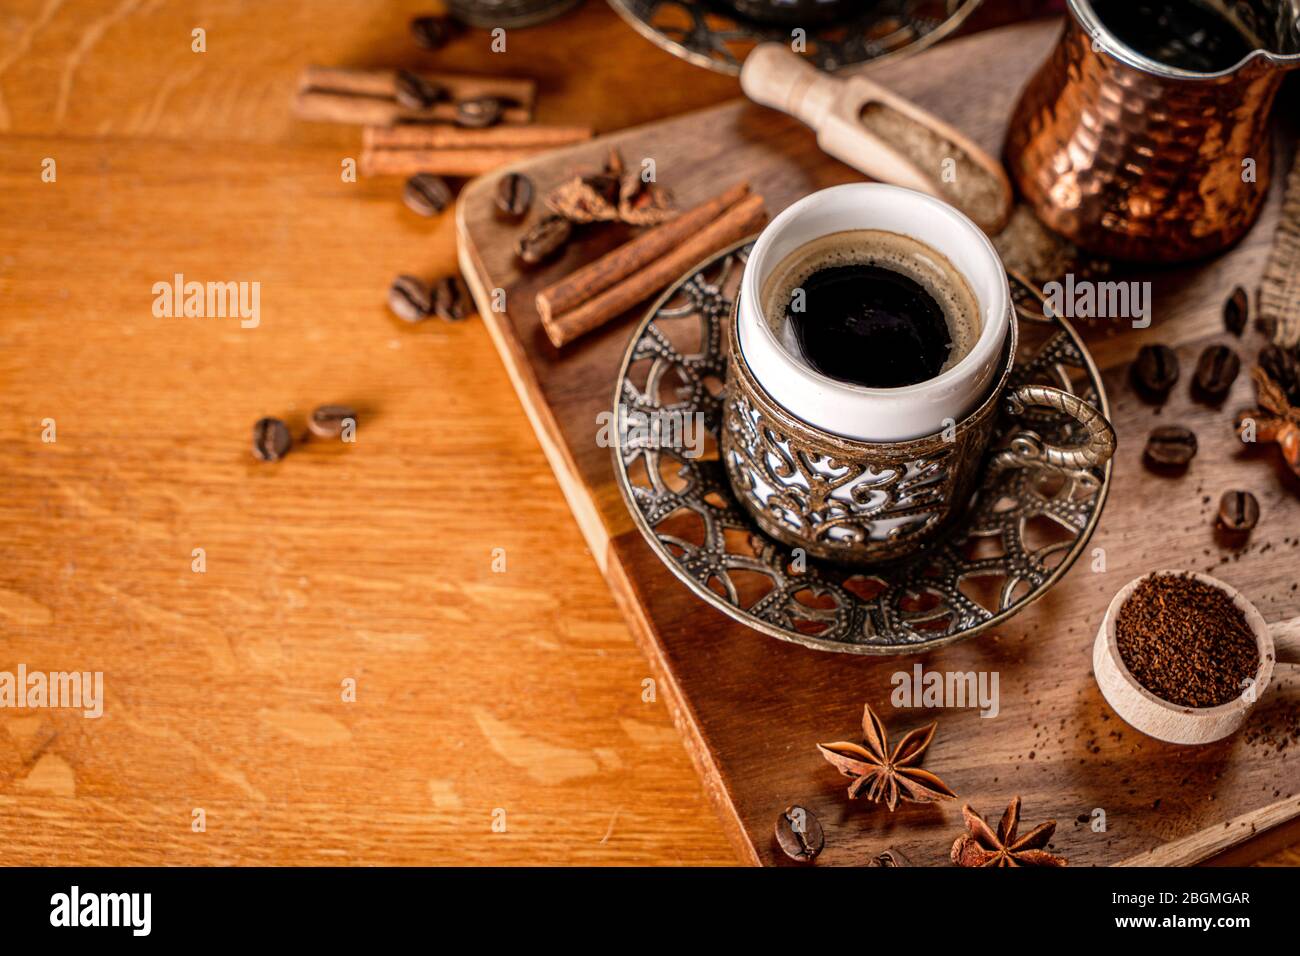 Detalle de una taza de café rodeada de granos de café y especias sobre un fondo de madera natural Foto de stock